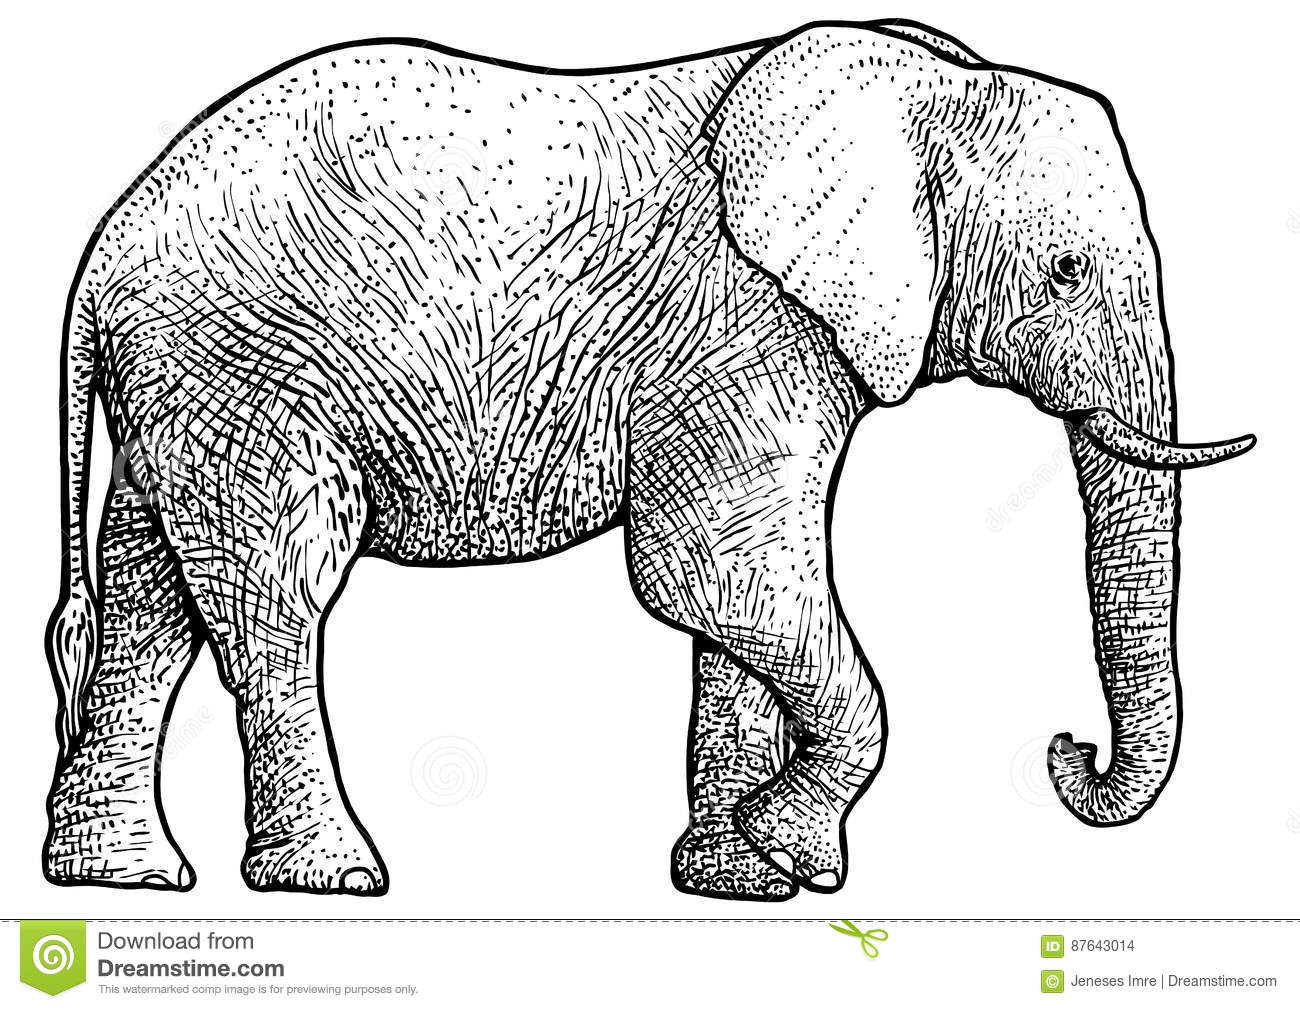 Illustration D'Éléphant, Dessin, Gravure, Encre, Schéma encequiconcerne Dessin D Elephant